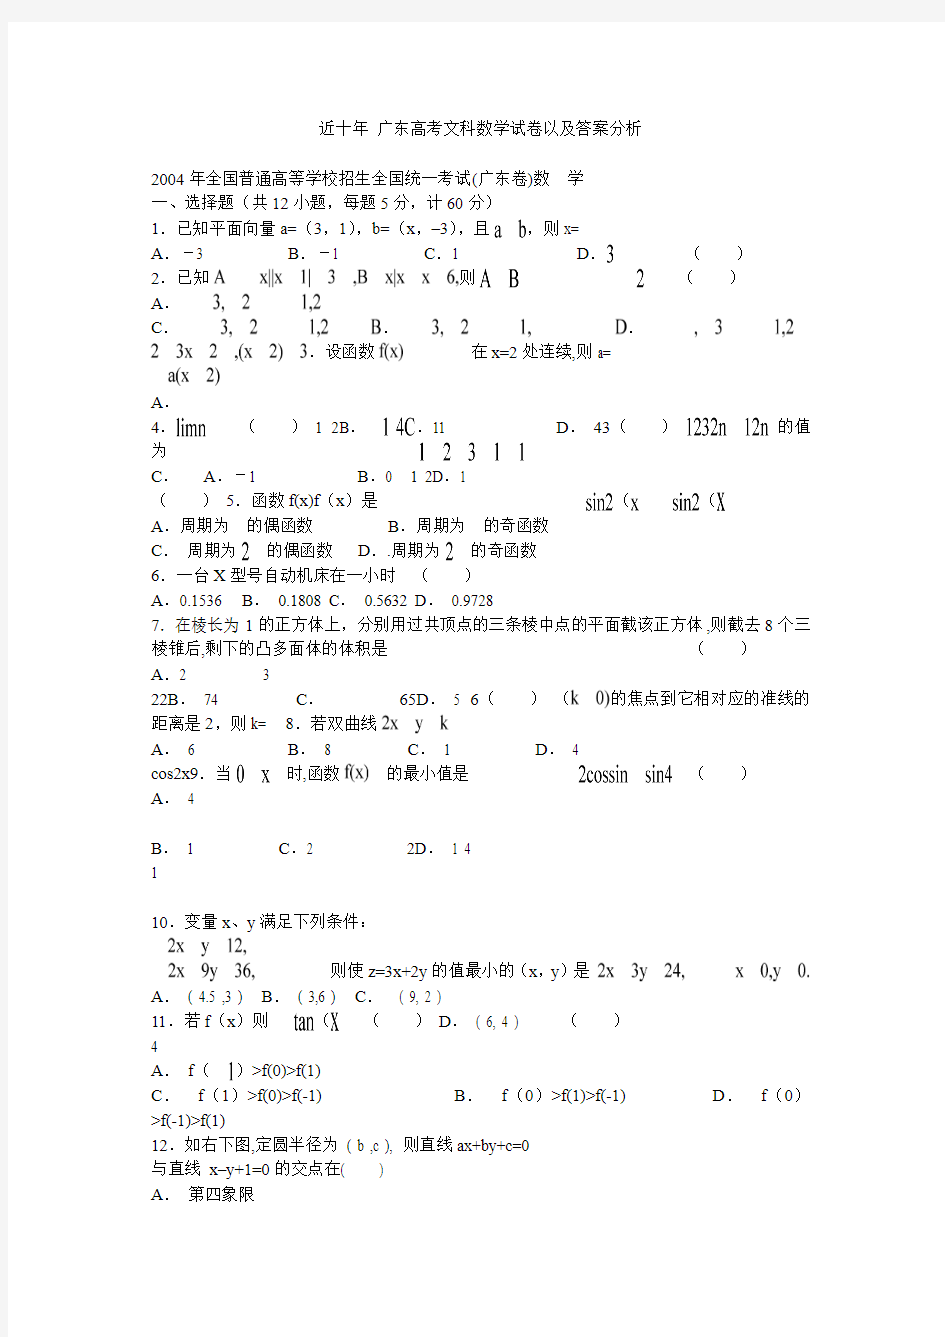 近十年 广东高考文科数学试卷以及答案分析